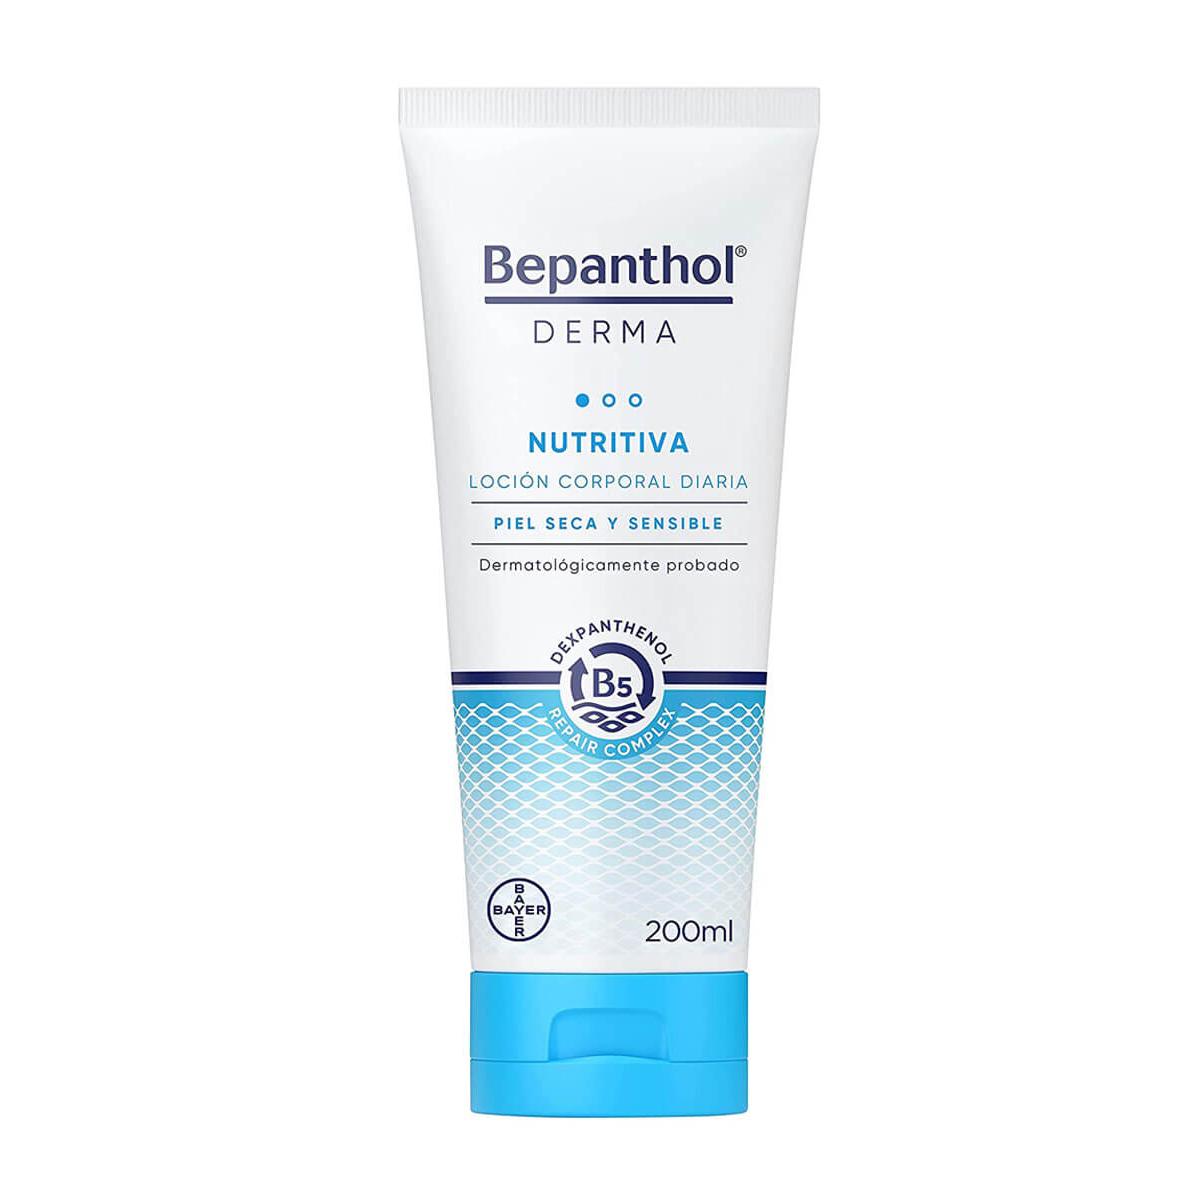 Bepanthol - Bepanthol ® derma loción corporal nutritiva diaria 200ml